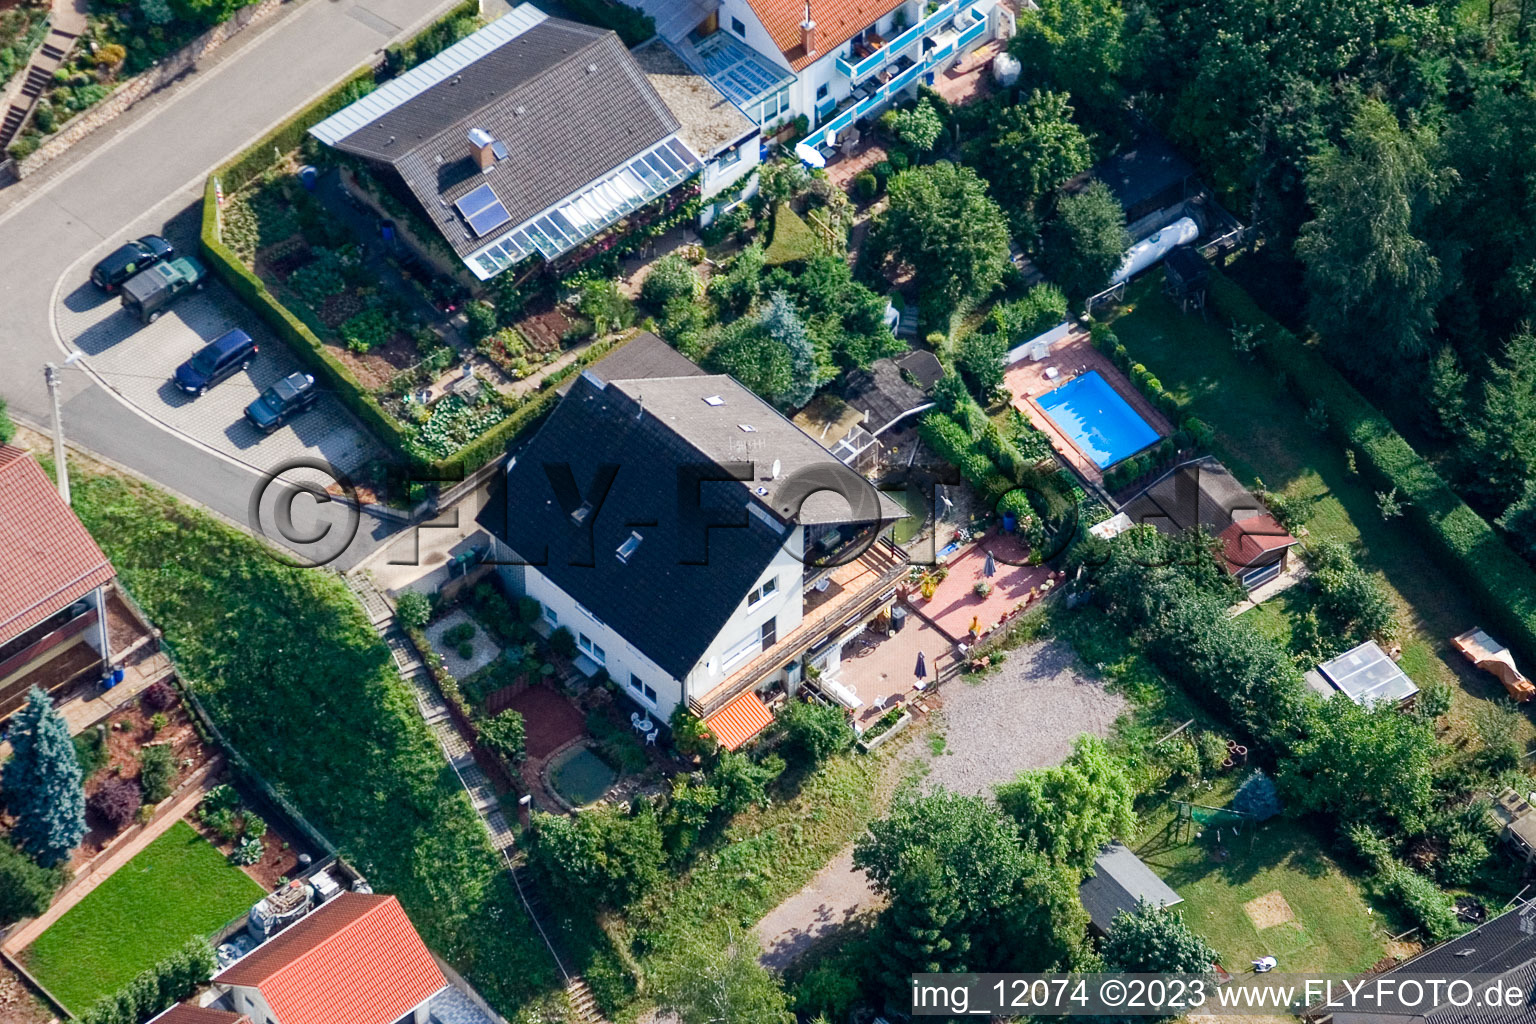 Ortsteil Gräfenhausen in Annweiler am Trifels im Bundesland Rheinland-Pfalz, Deutschland aus der Drohnenperspektive